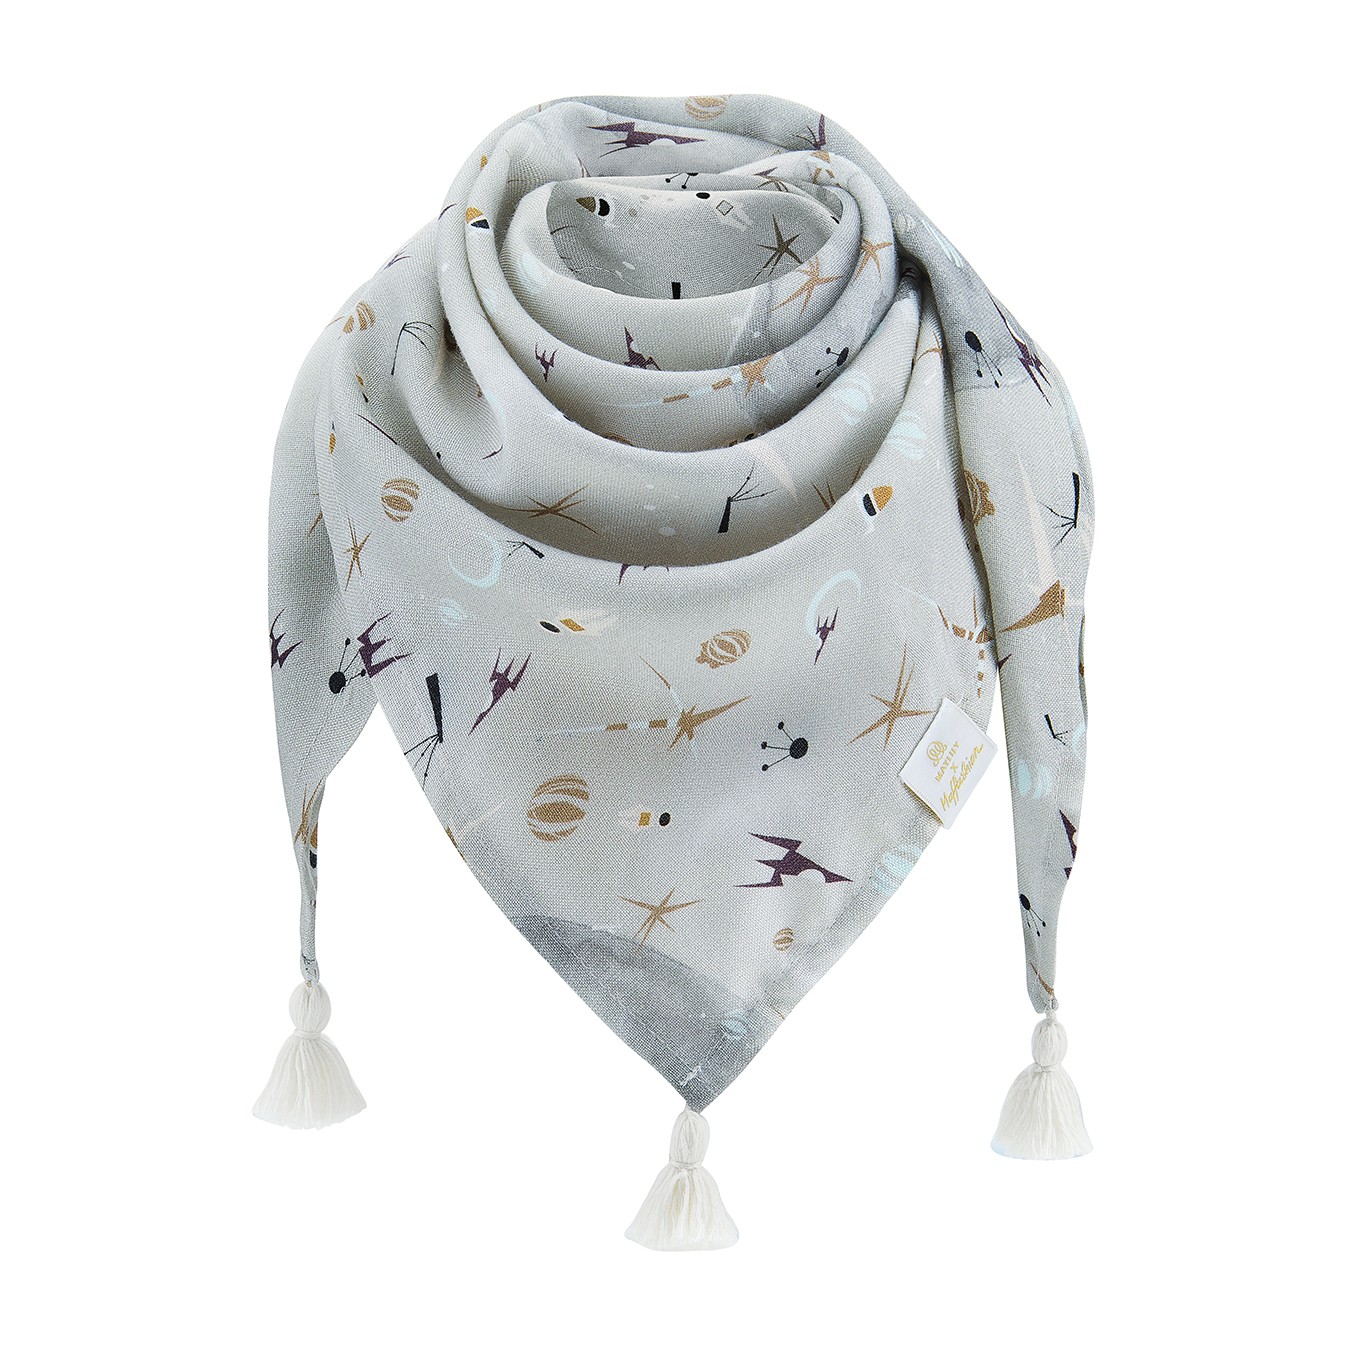 Bamboo tassel scarf - by Maffashion - cream